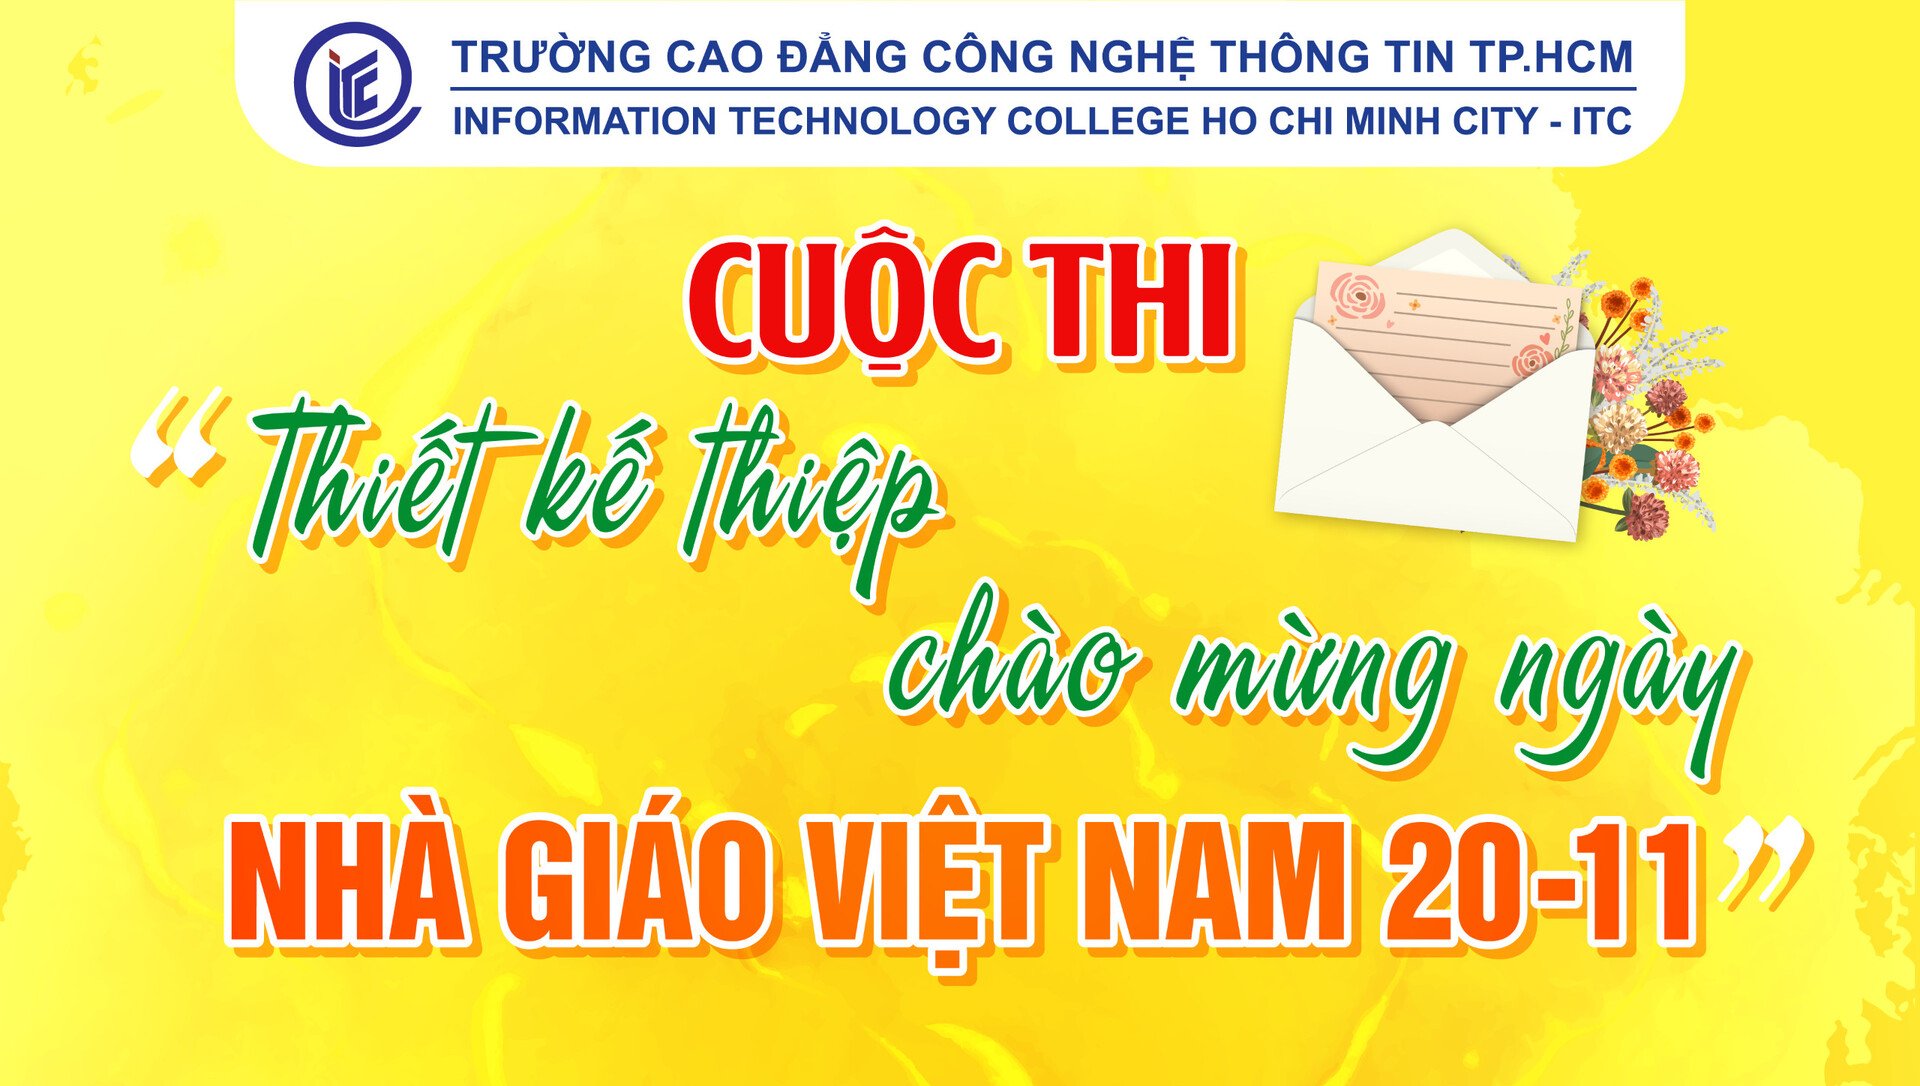 Thông báo Tổ chức thi “Thiết kế Thiệp chào mừng ngày Nhà Giáo Việt Nam” cho sinh viên Khoa CNTT – ĐT